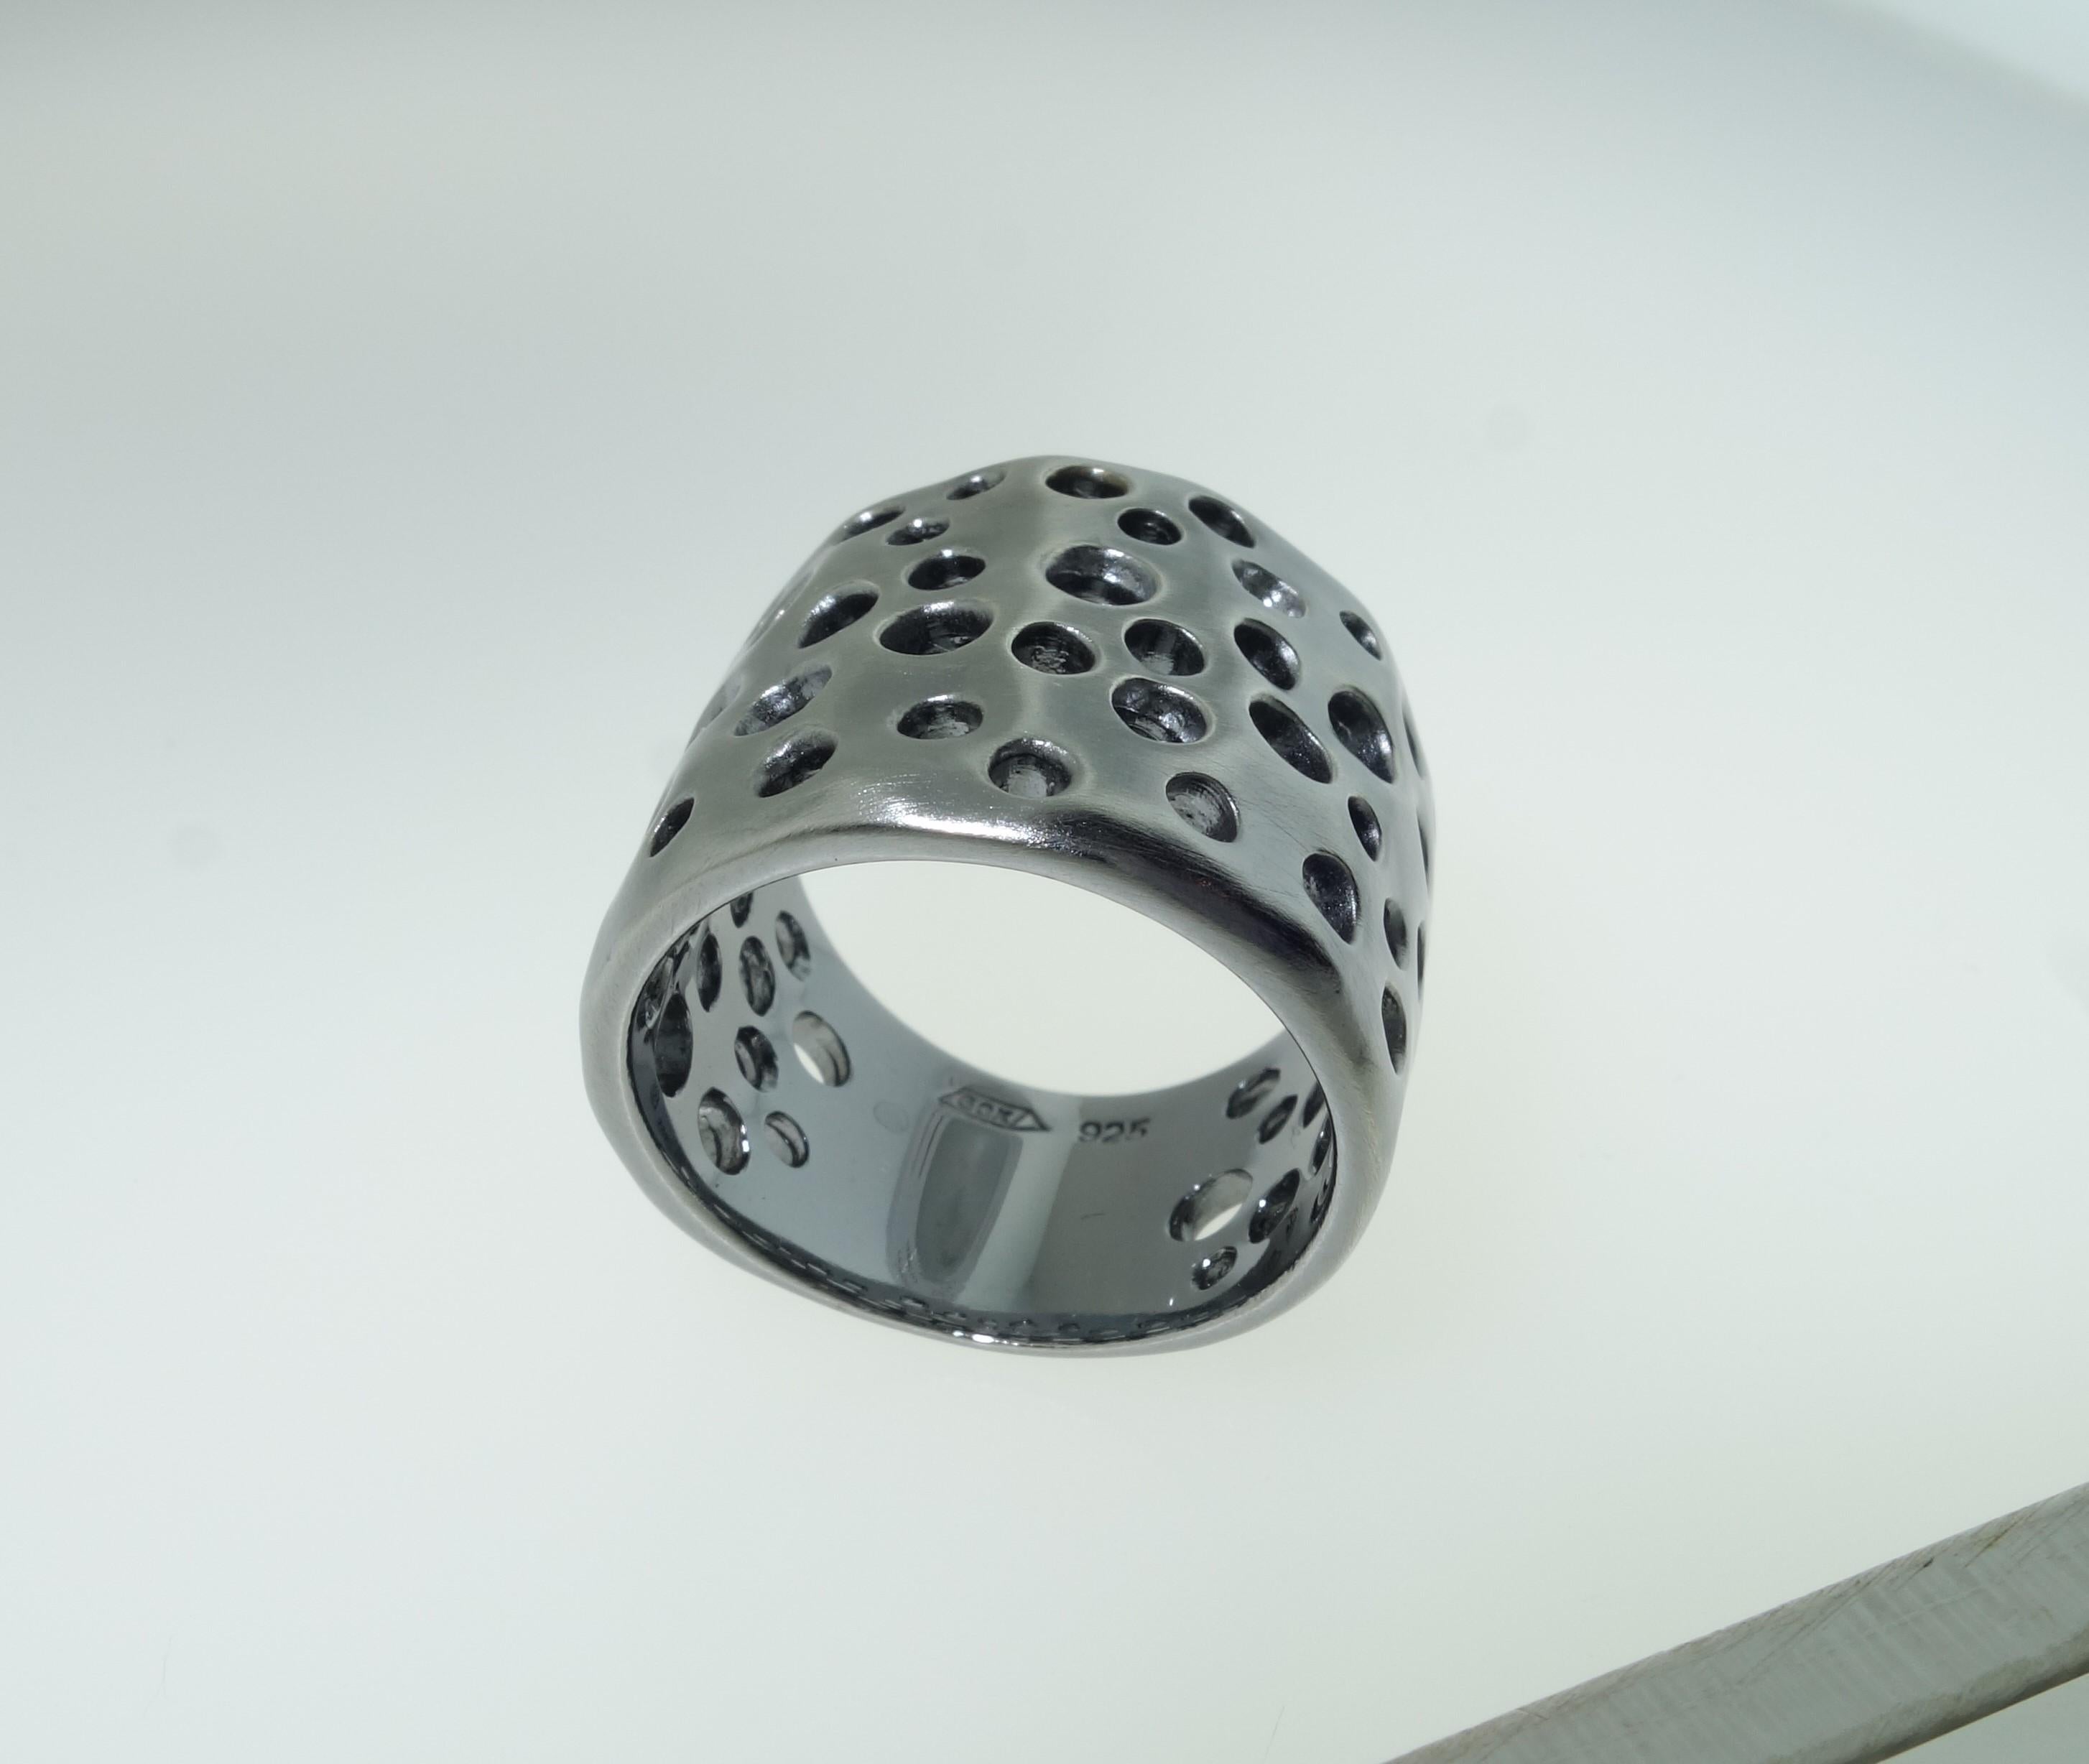 Schöne Kuppel Ring Hand in Rhodium Sterling Silber gefertigt; die obere Kuppel des Rings misst ca. 1 Zoll in der Länge x 0,75 Zoll breit. Ring Größe 7. Kühn und doch unverwechselbar klassisch! Hervorragend in jeder Hinsicht ... Ein Muss haben Sie